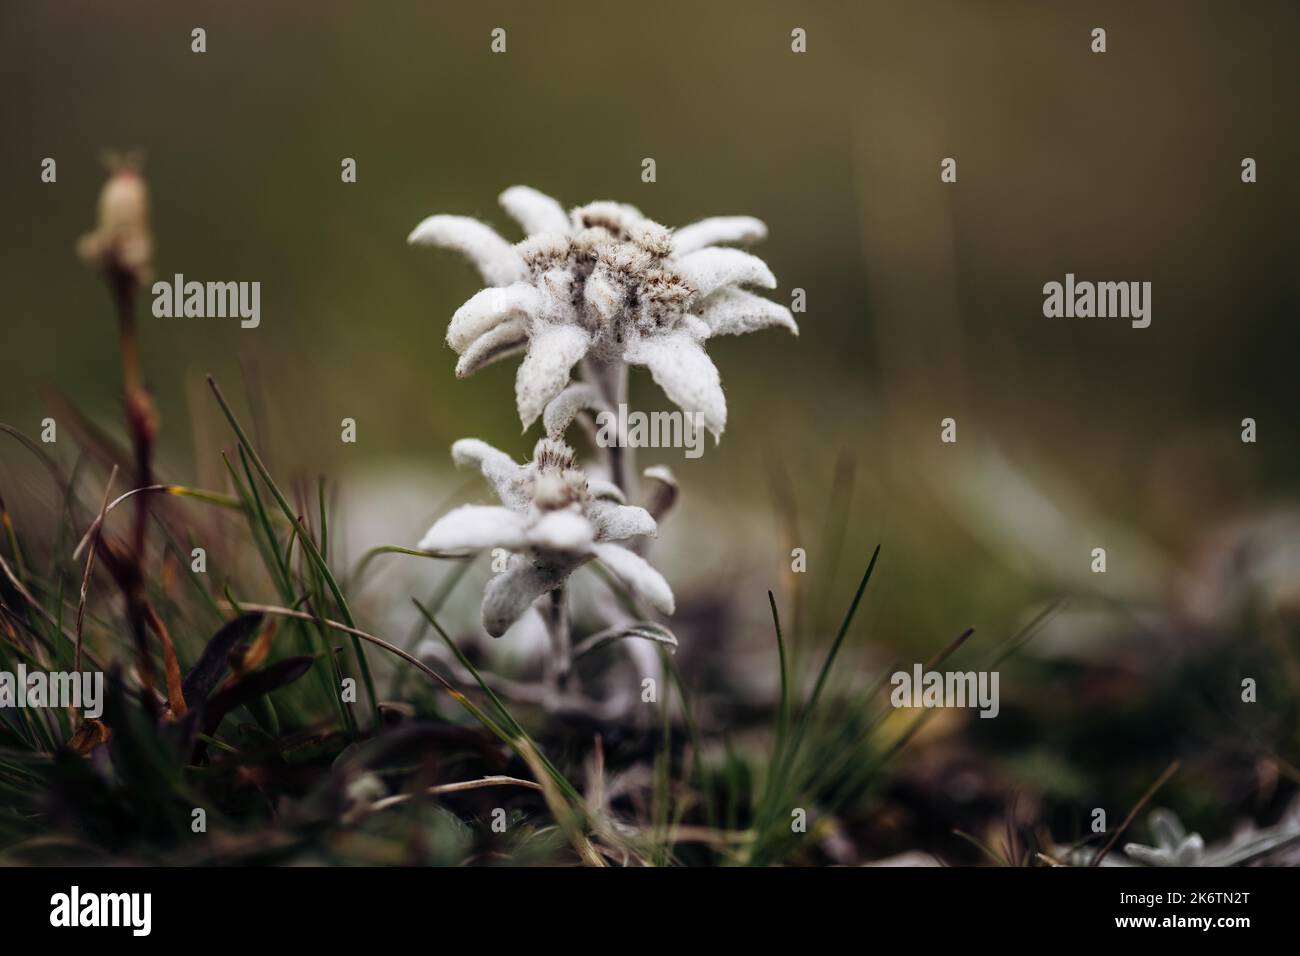 Alici (Leontopodium nivale), alici sul trenchling, Lagoess-Sankt Katharein, Stiria, Austria Foto Stock